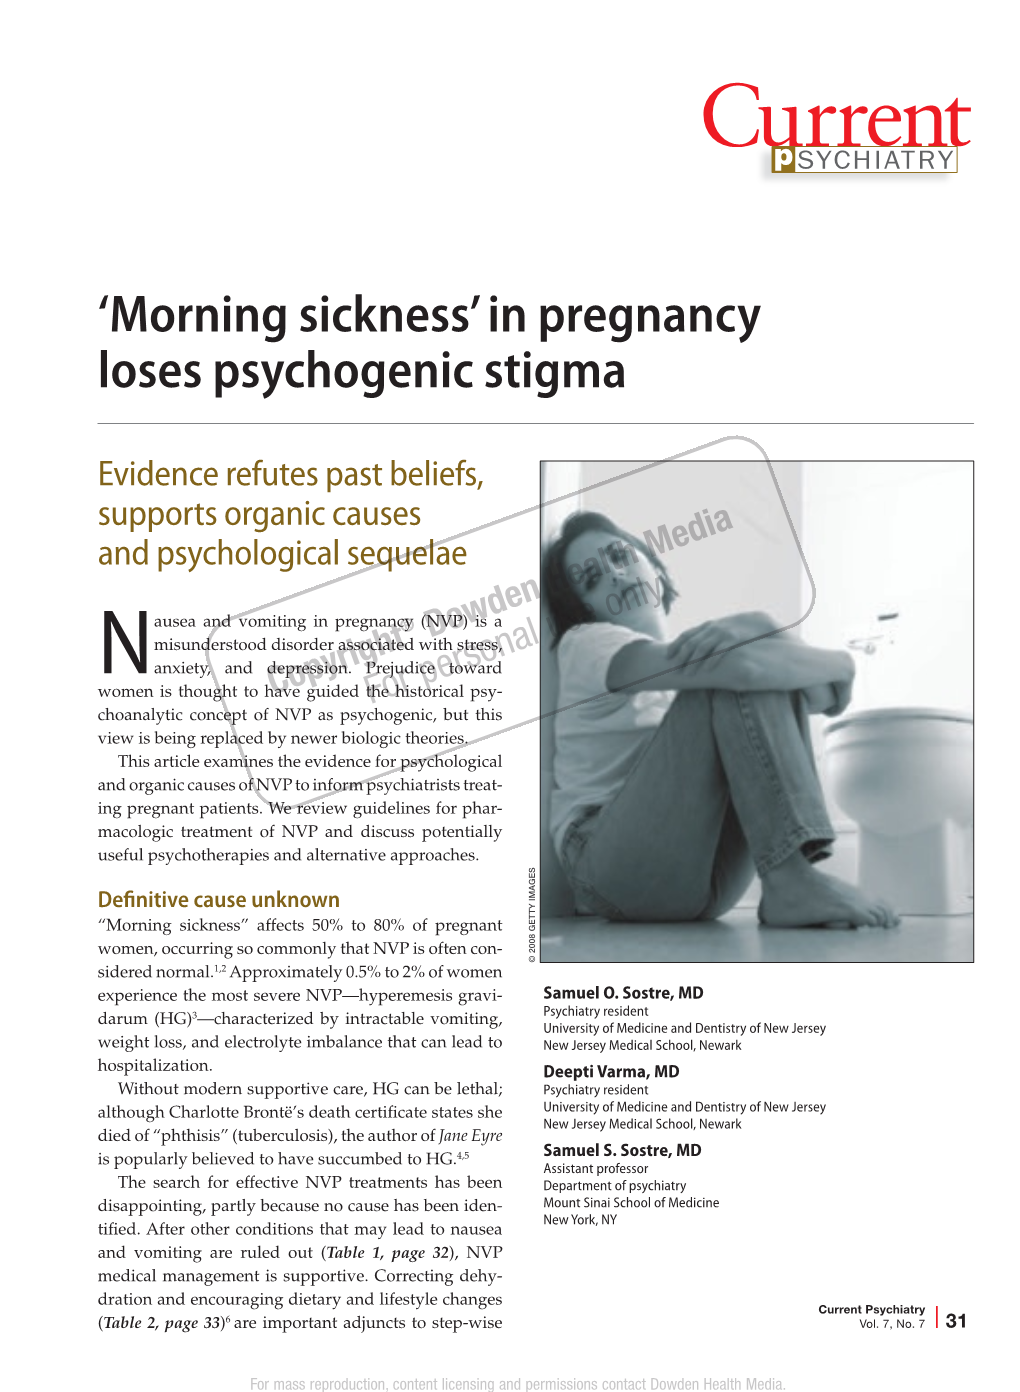 'Morning Sickness' in Pregnancy Loses Psychogenic Stigma